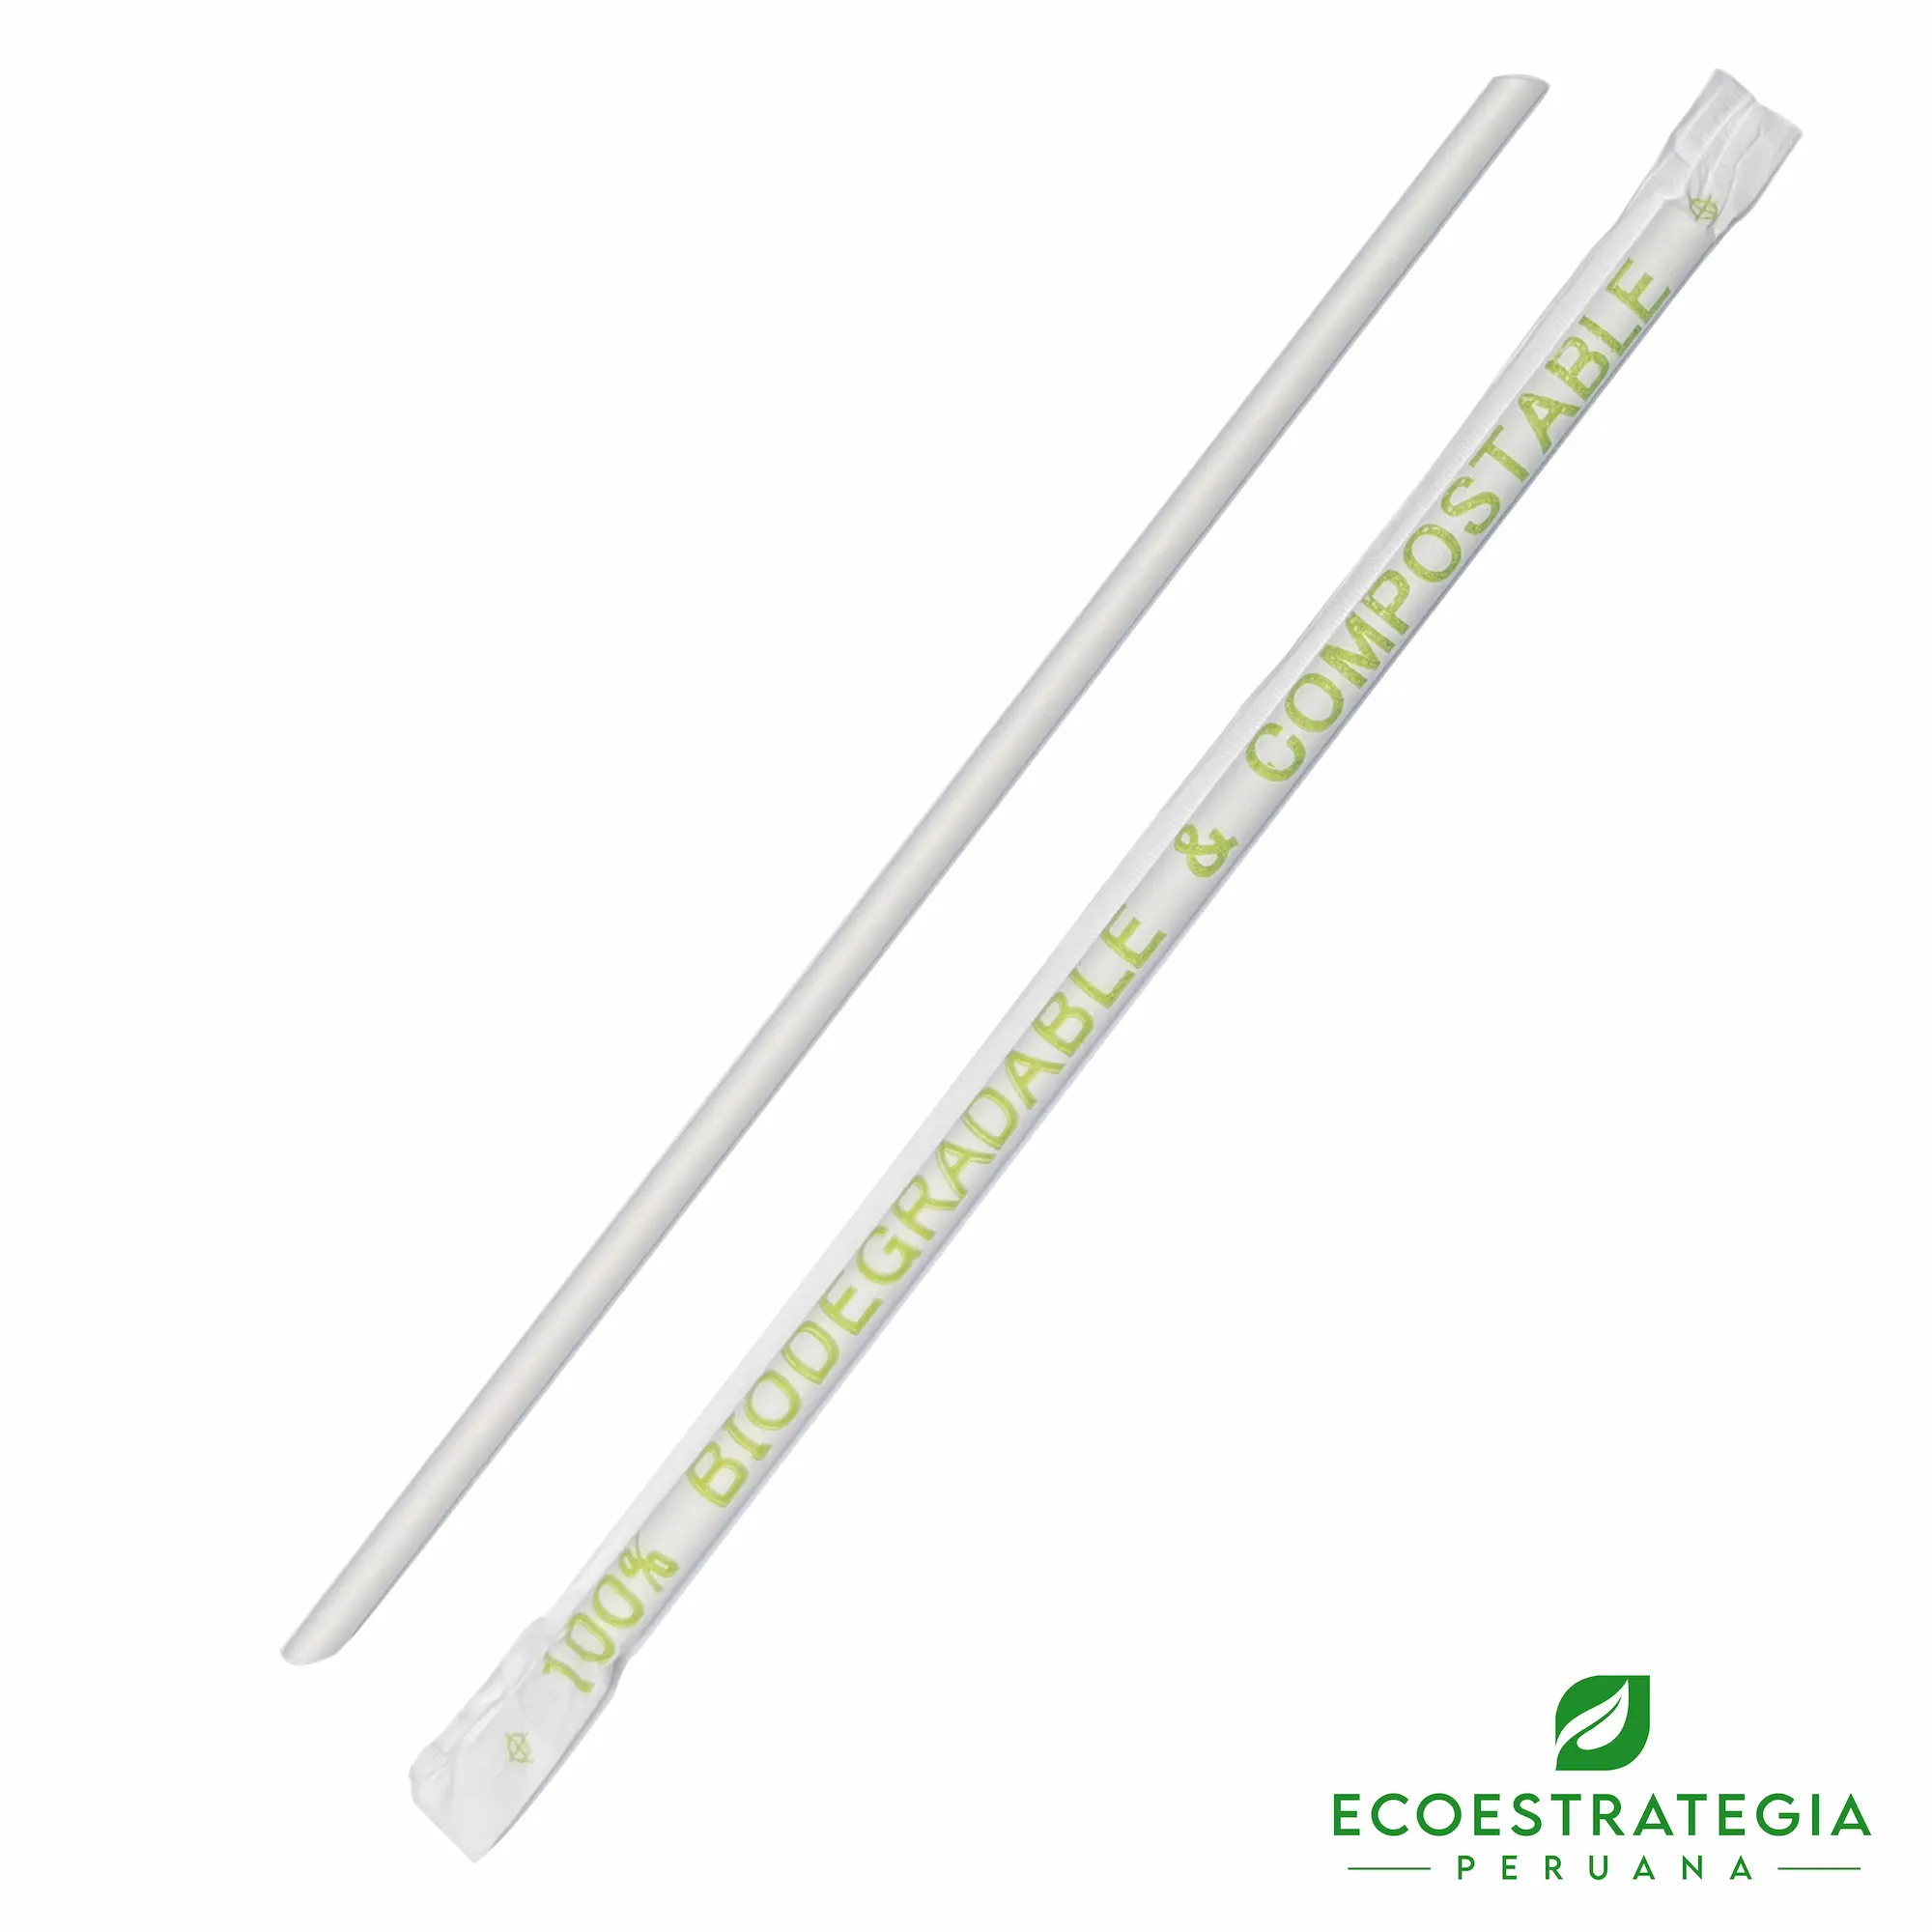 Este sorbete de 6 mm es un producto de materiales ecológicos, hecho a base de papel biodegradable. Cotiza sorbetes, cañitas y popotes para bebidas